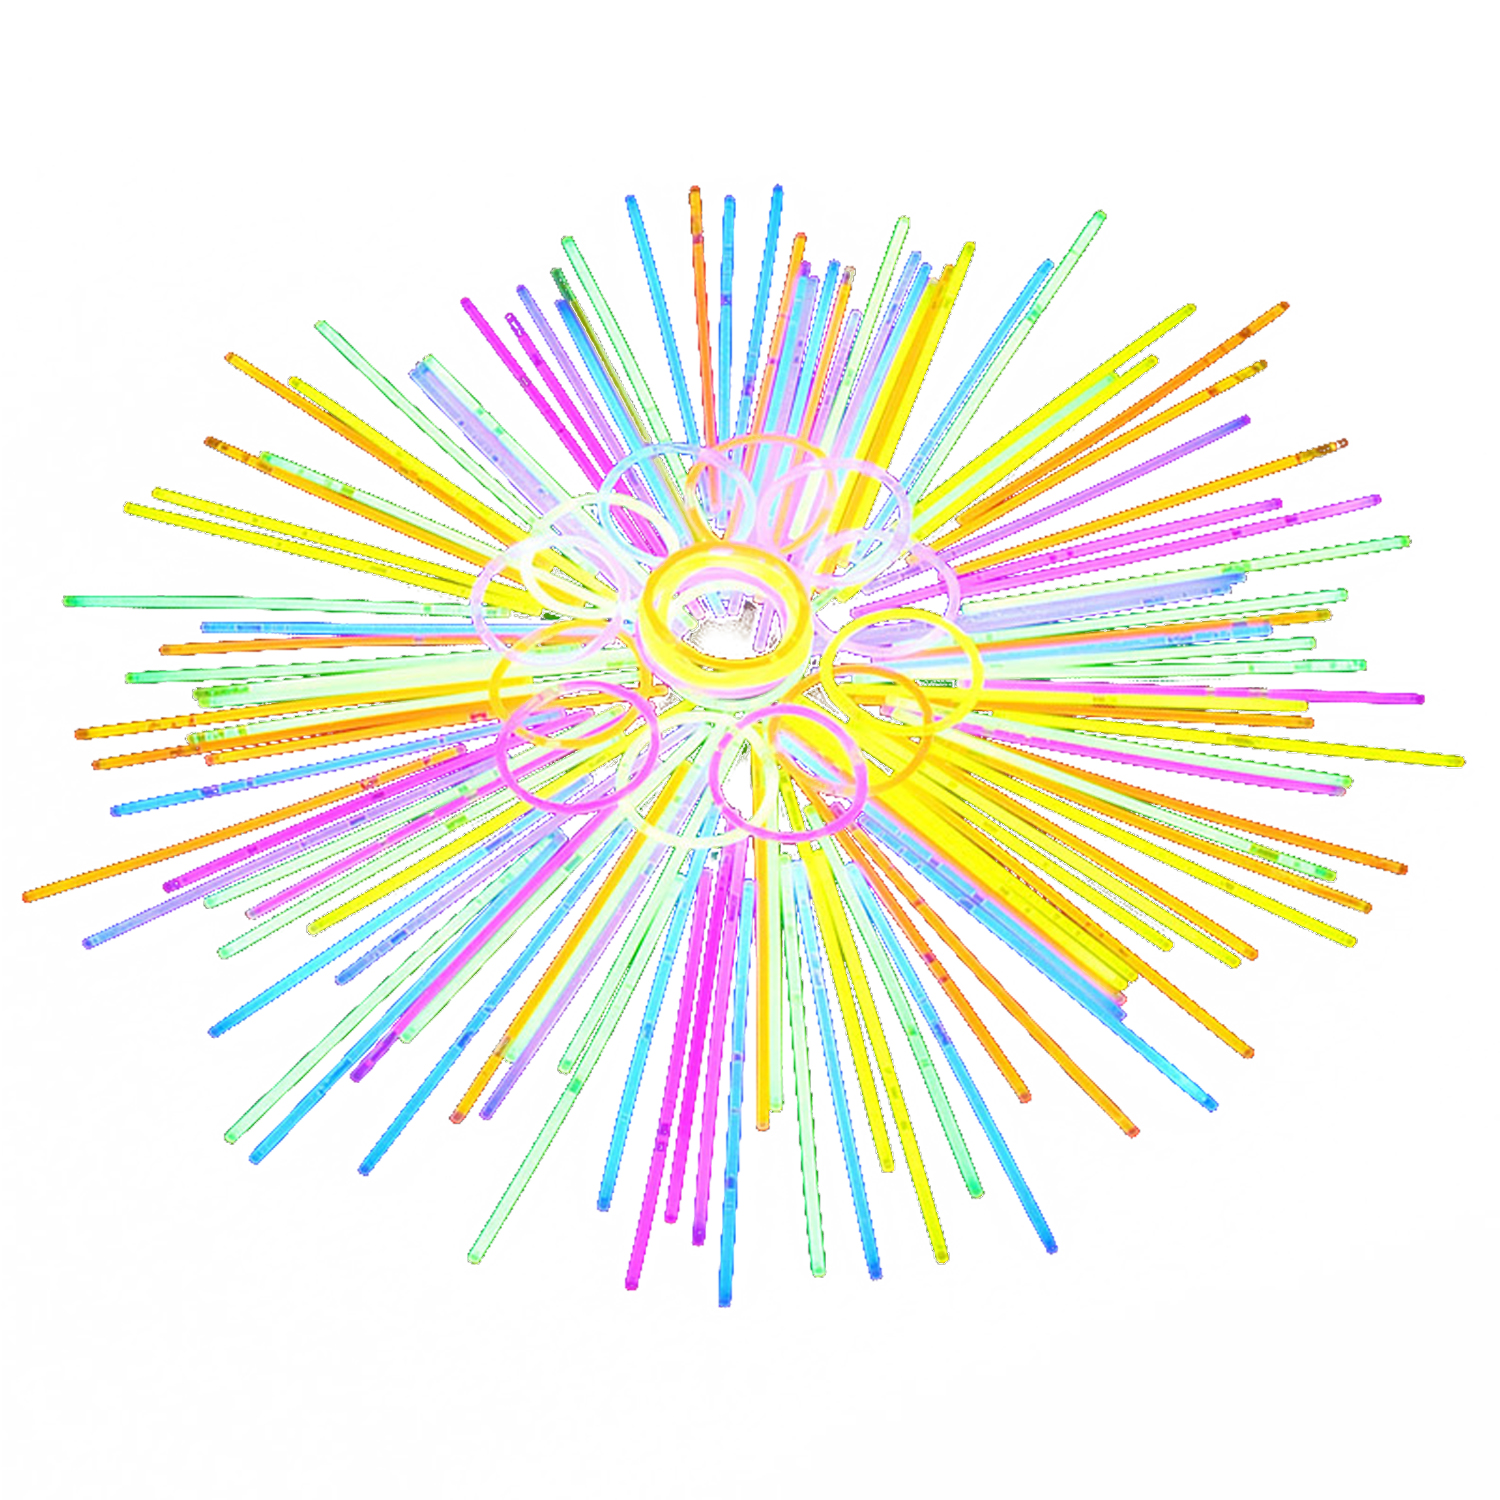 20 CM * 5 MM suministros creativos para fiestas y festivales bailando Unisex colorido palo brillante desechable